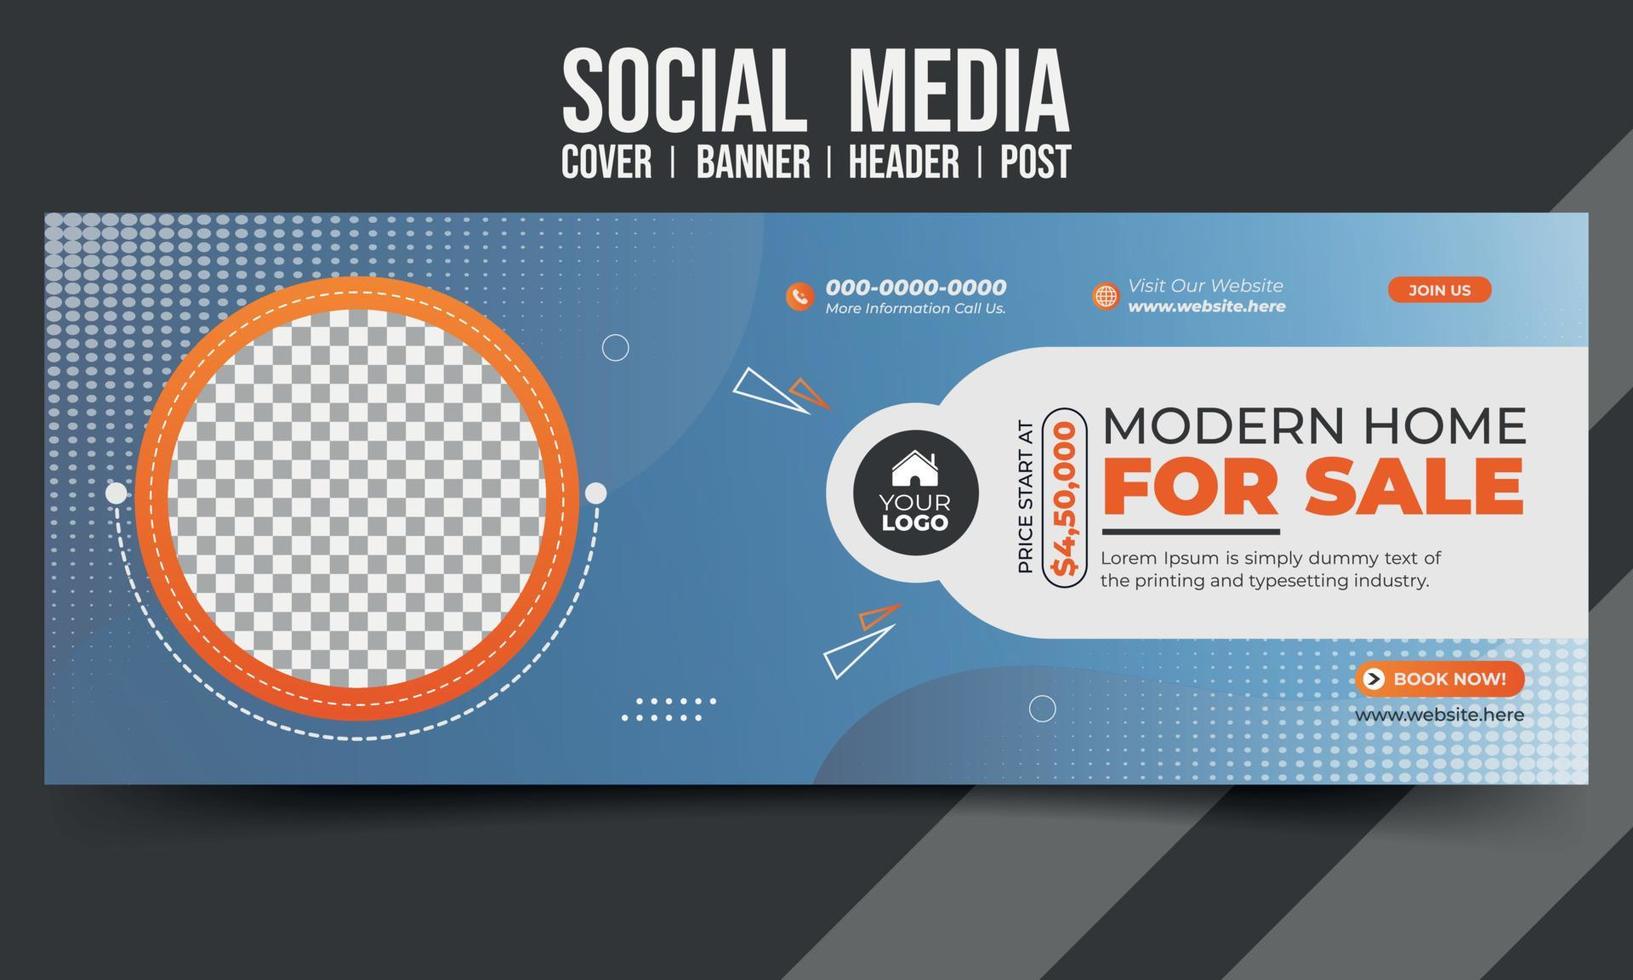 Haus zum Verkauf Geschäft Social Media Cover Banner Header Post Design Vektorvorlage vektor